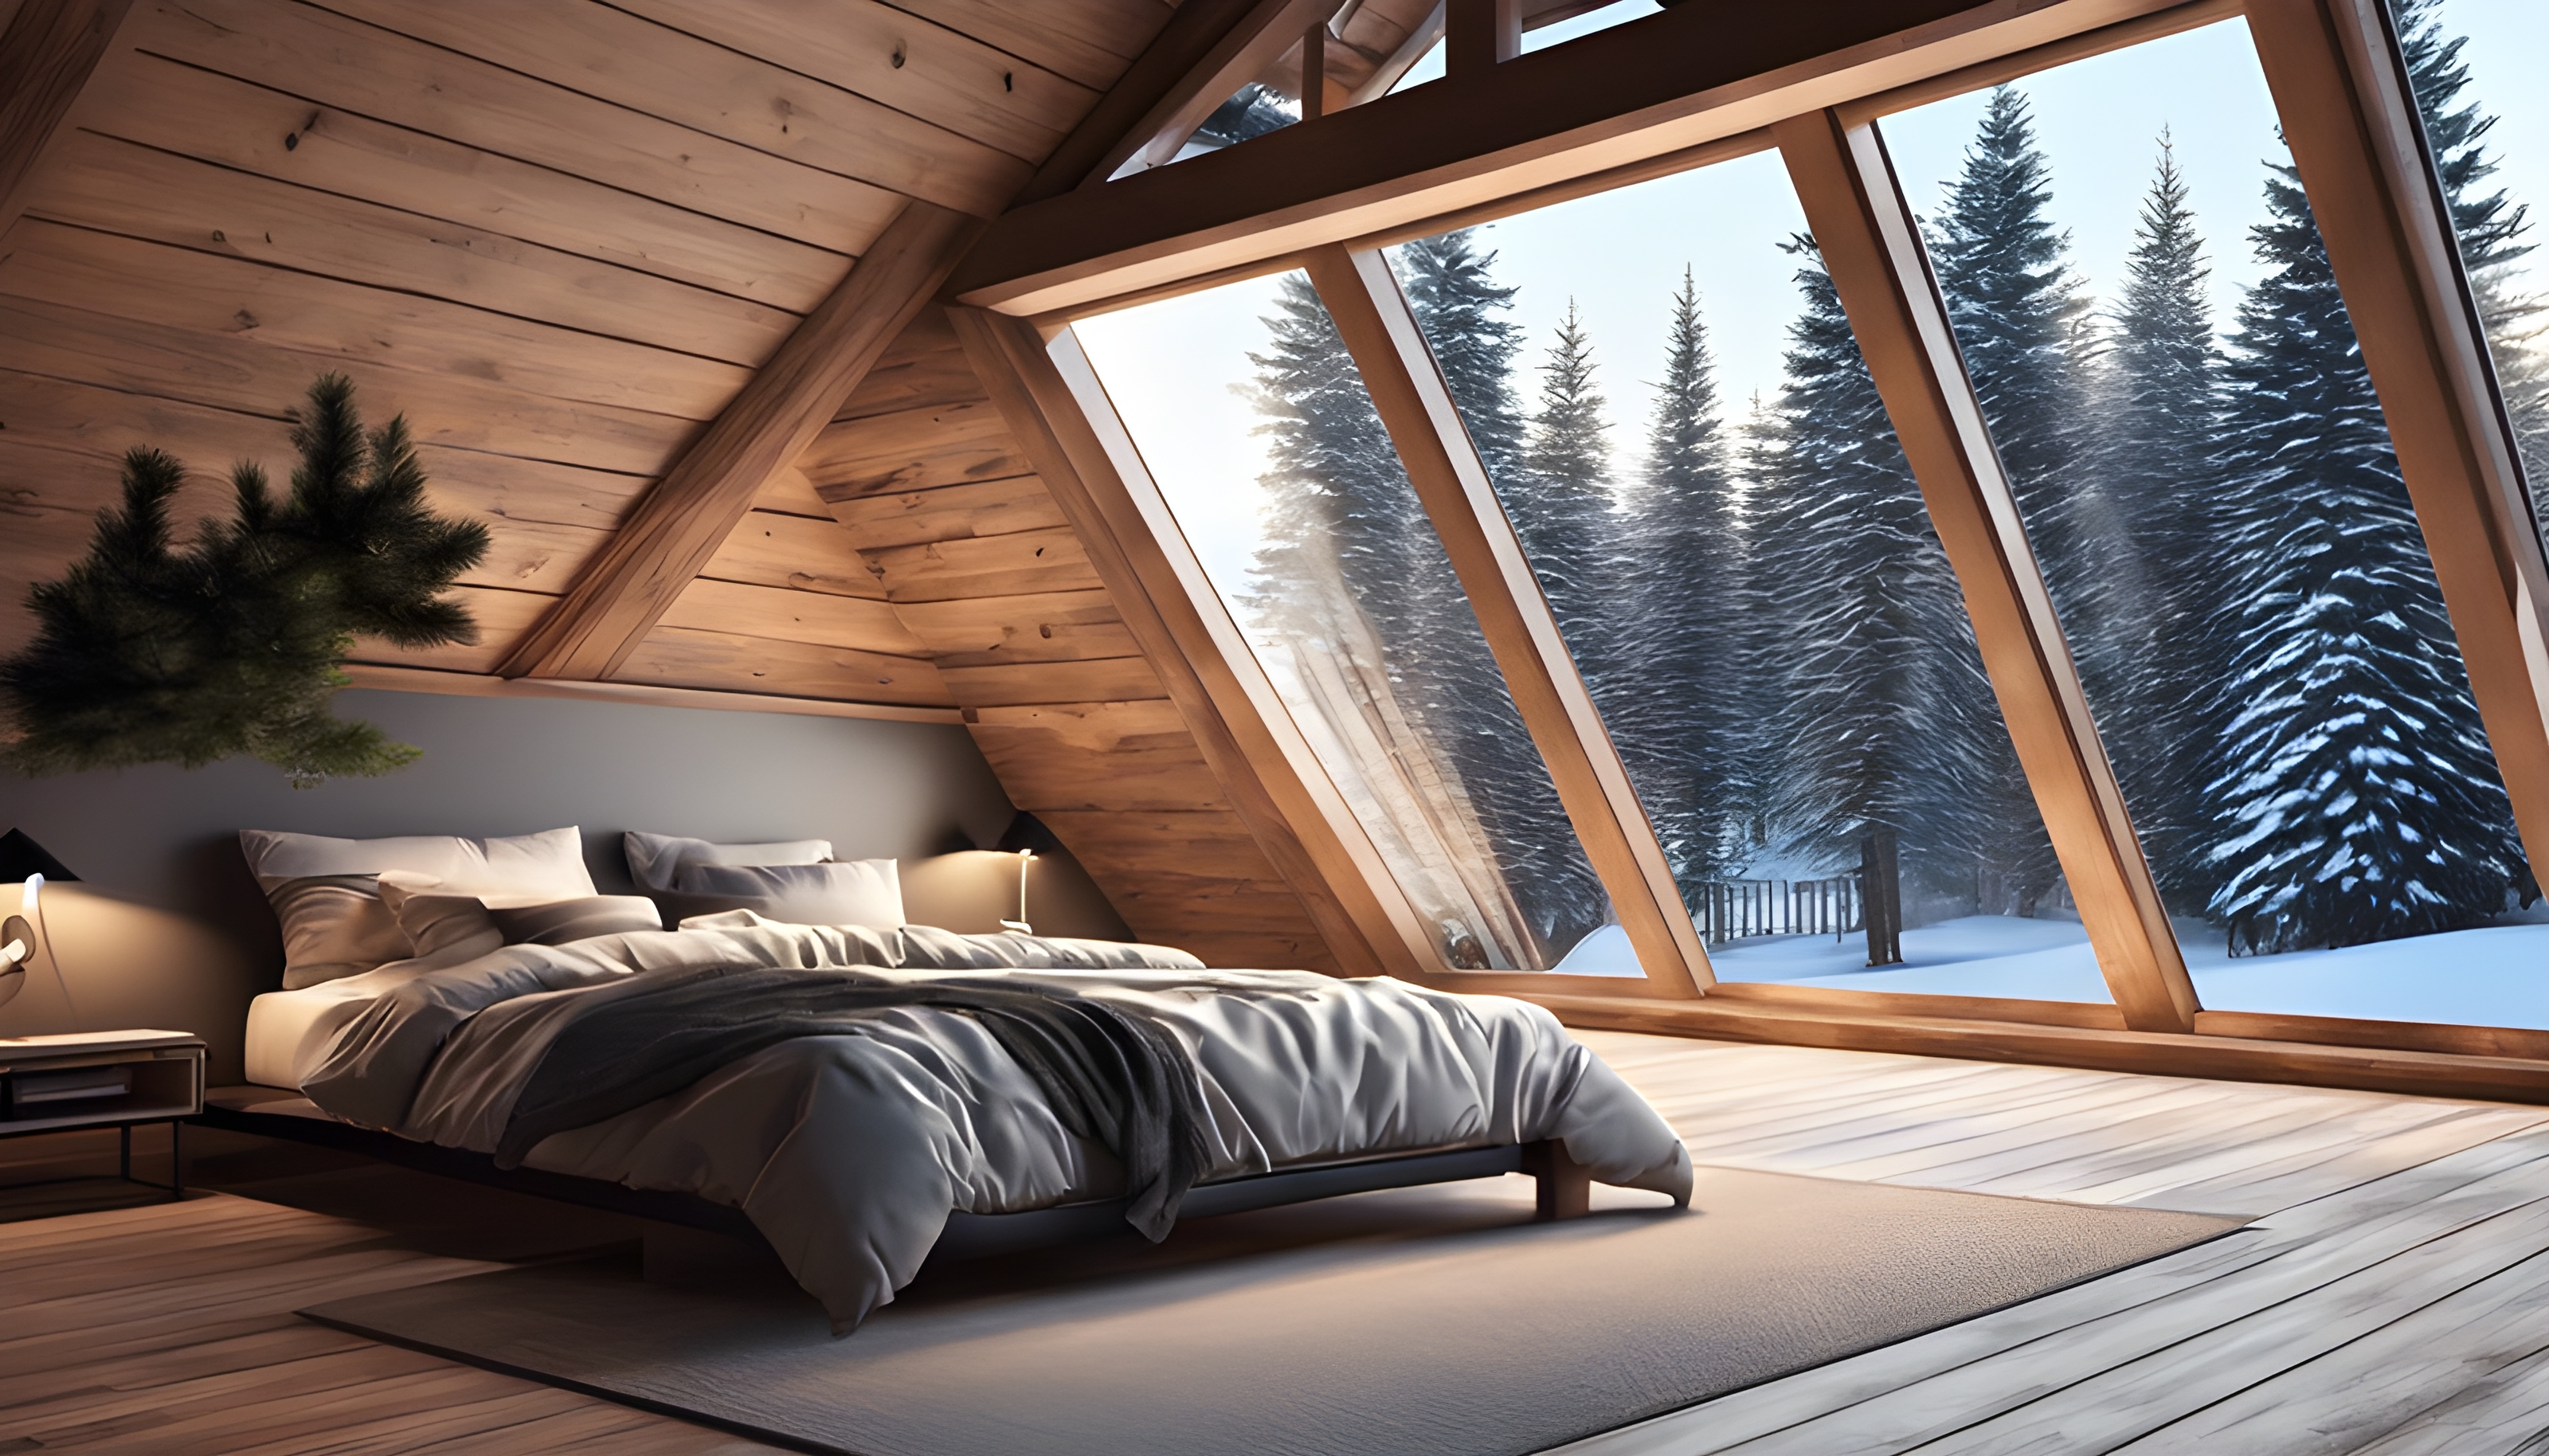 สร้างภาพ ห้องนอนเล็กใต้หลังคา, พื้นไม้, เตียงนอน, เรียบง่าย, ทันสมัย, ไฟสปอร์ตไลท์แบบฝัง, นอกหน้าต่างเป็นวิวต้นสนที่ถูกปกคลุมด้วยหิมะ, สมจริง